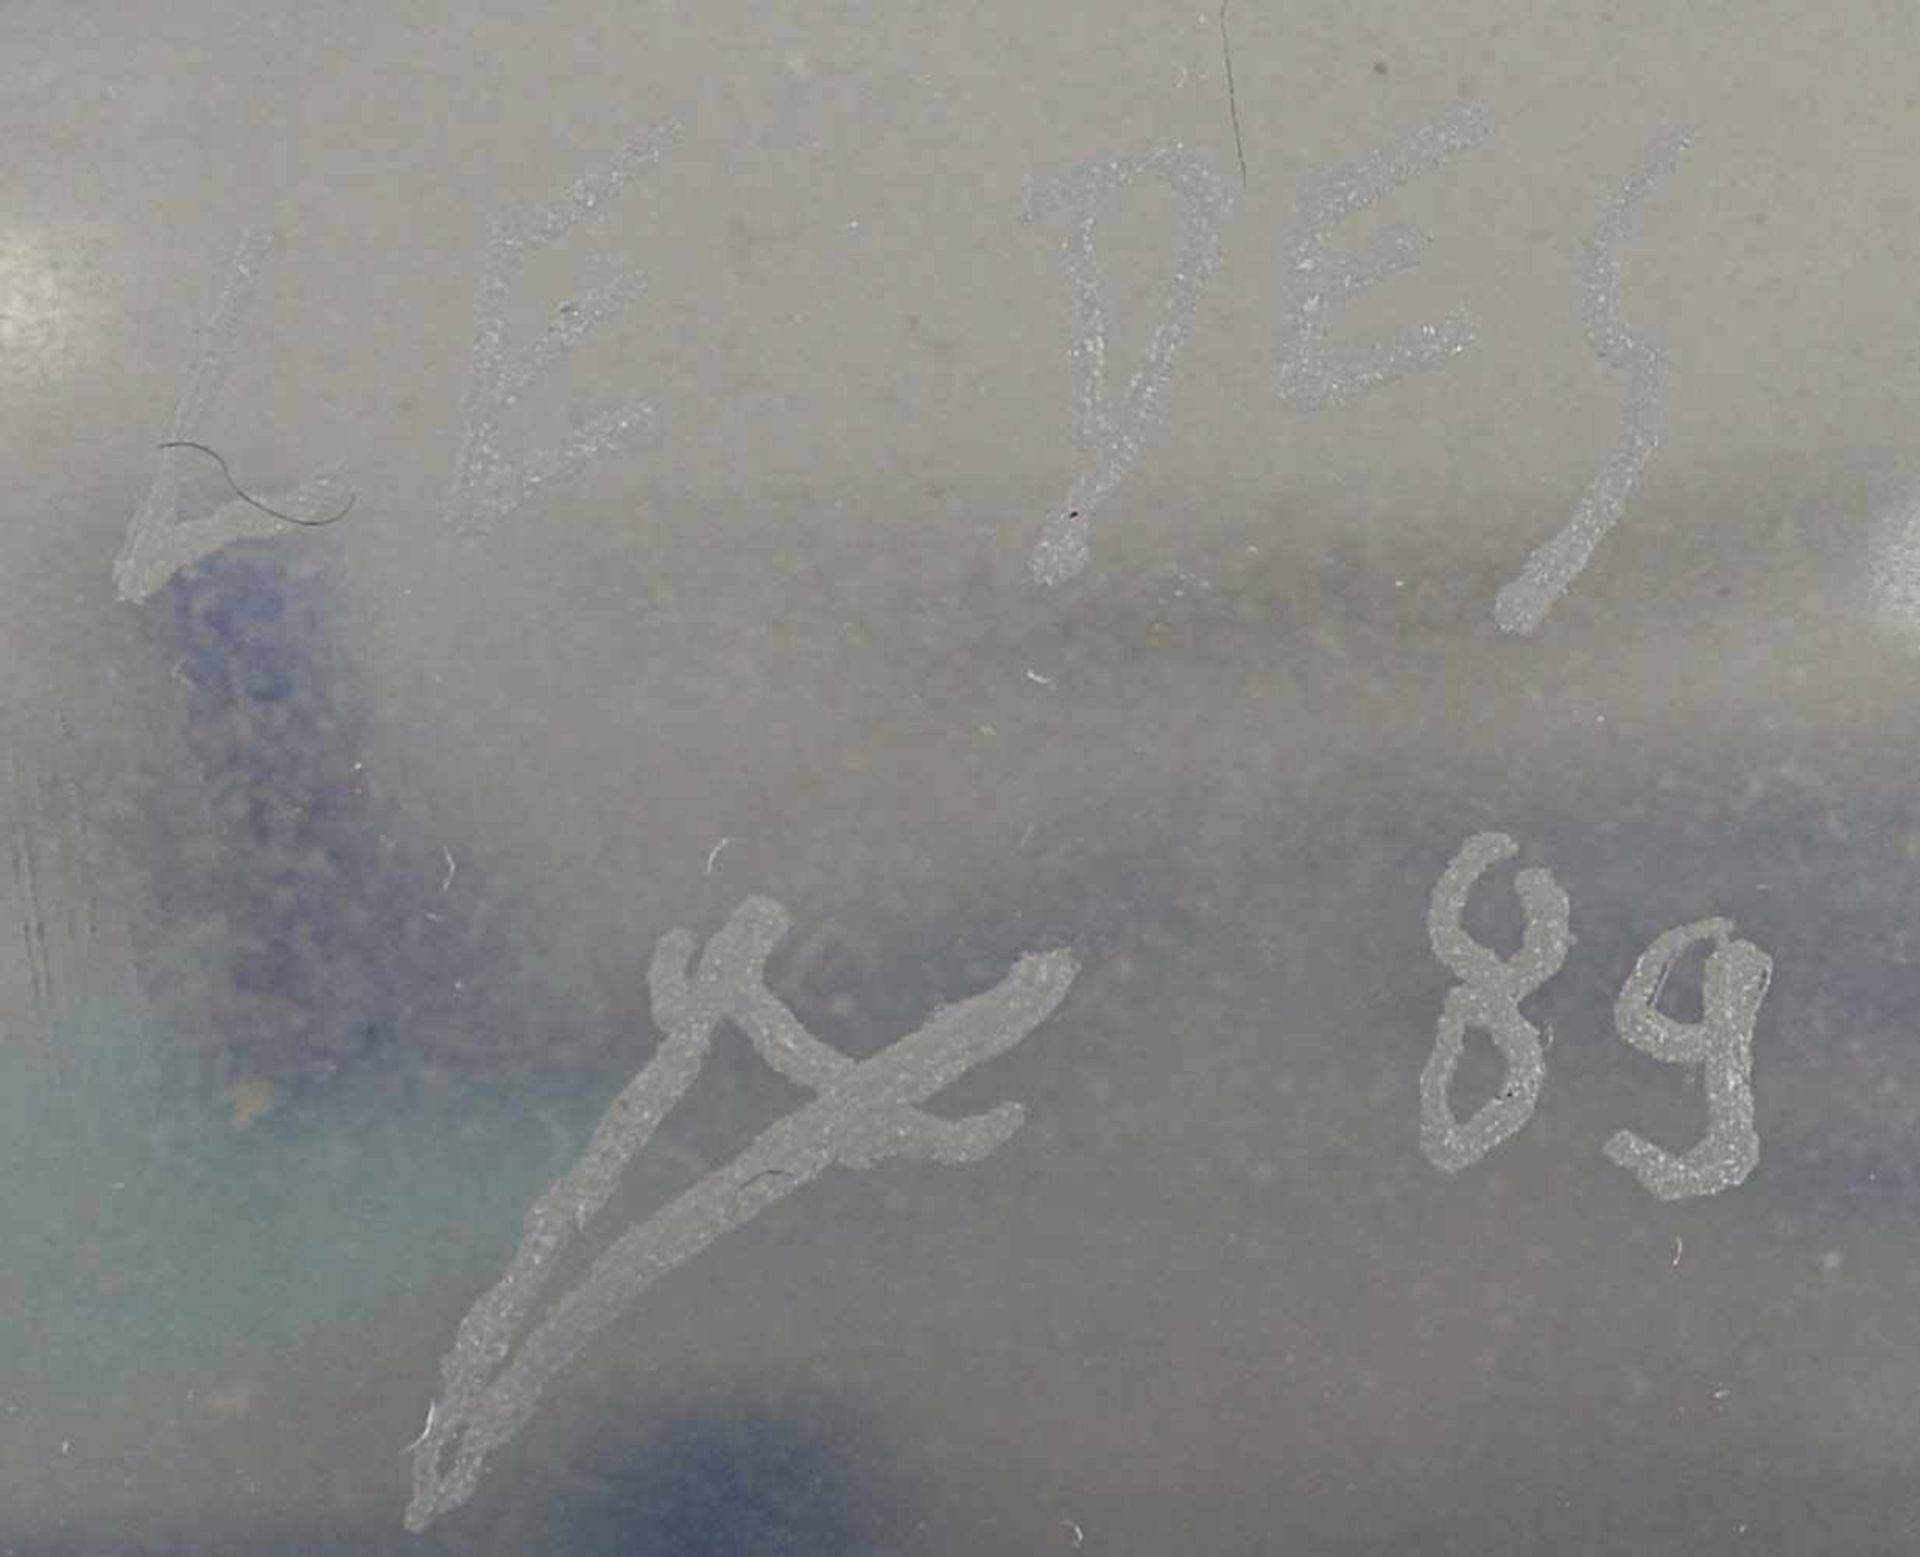 VASE, farbloses Glas, blaue Fadeneinschmelzungen, H 22, min.ber., sign. Le Des und datiert (19)89 - Image 2 of 2